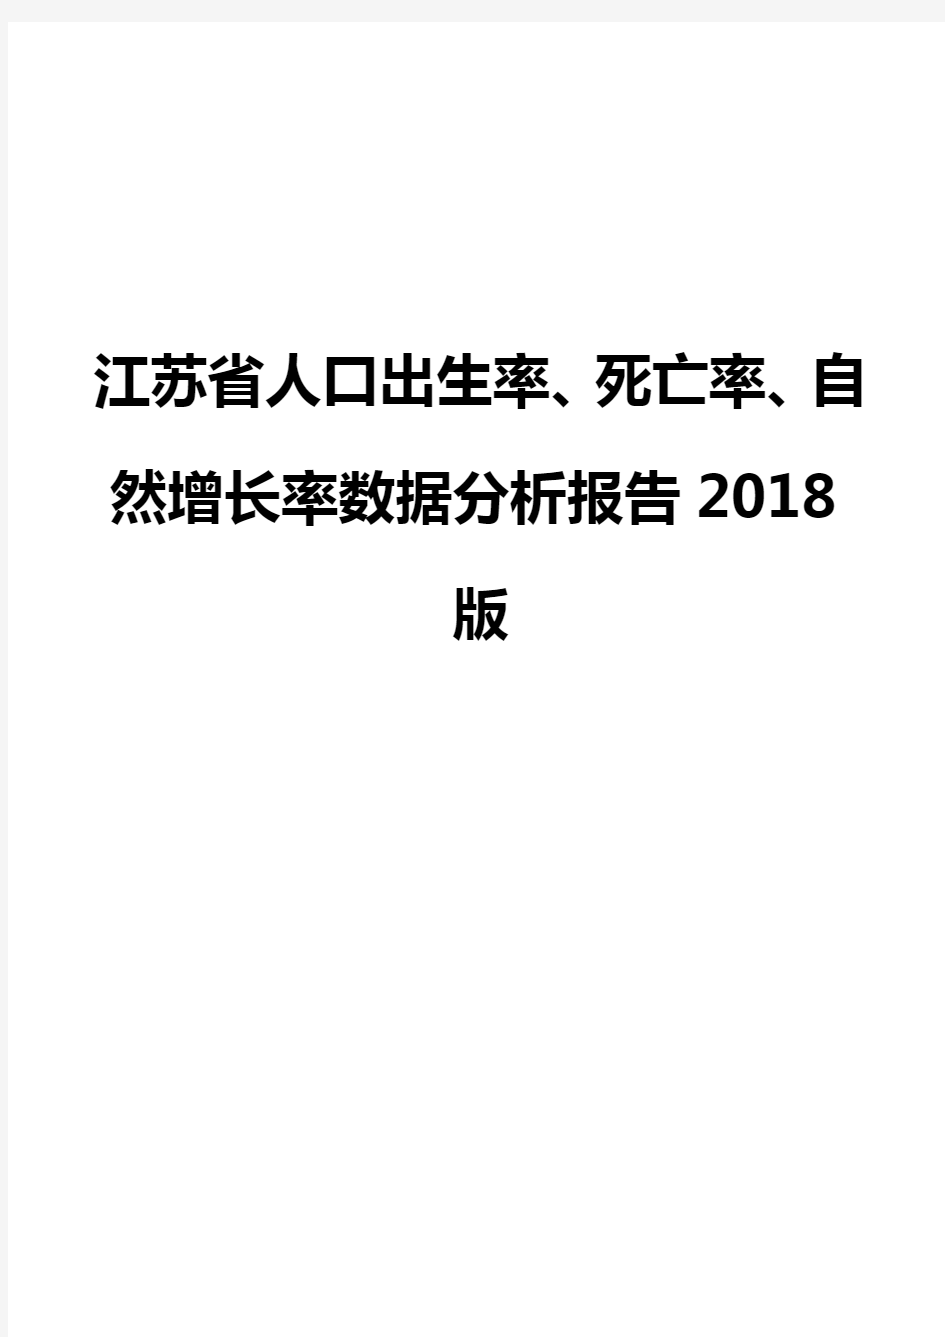 江苏省人口出生率、死亡率、自然增长率数据分析报告2018版